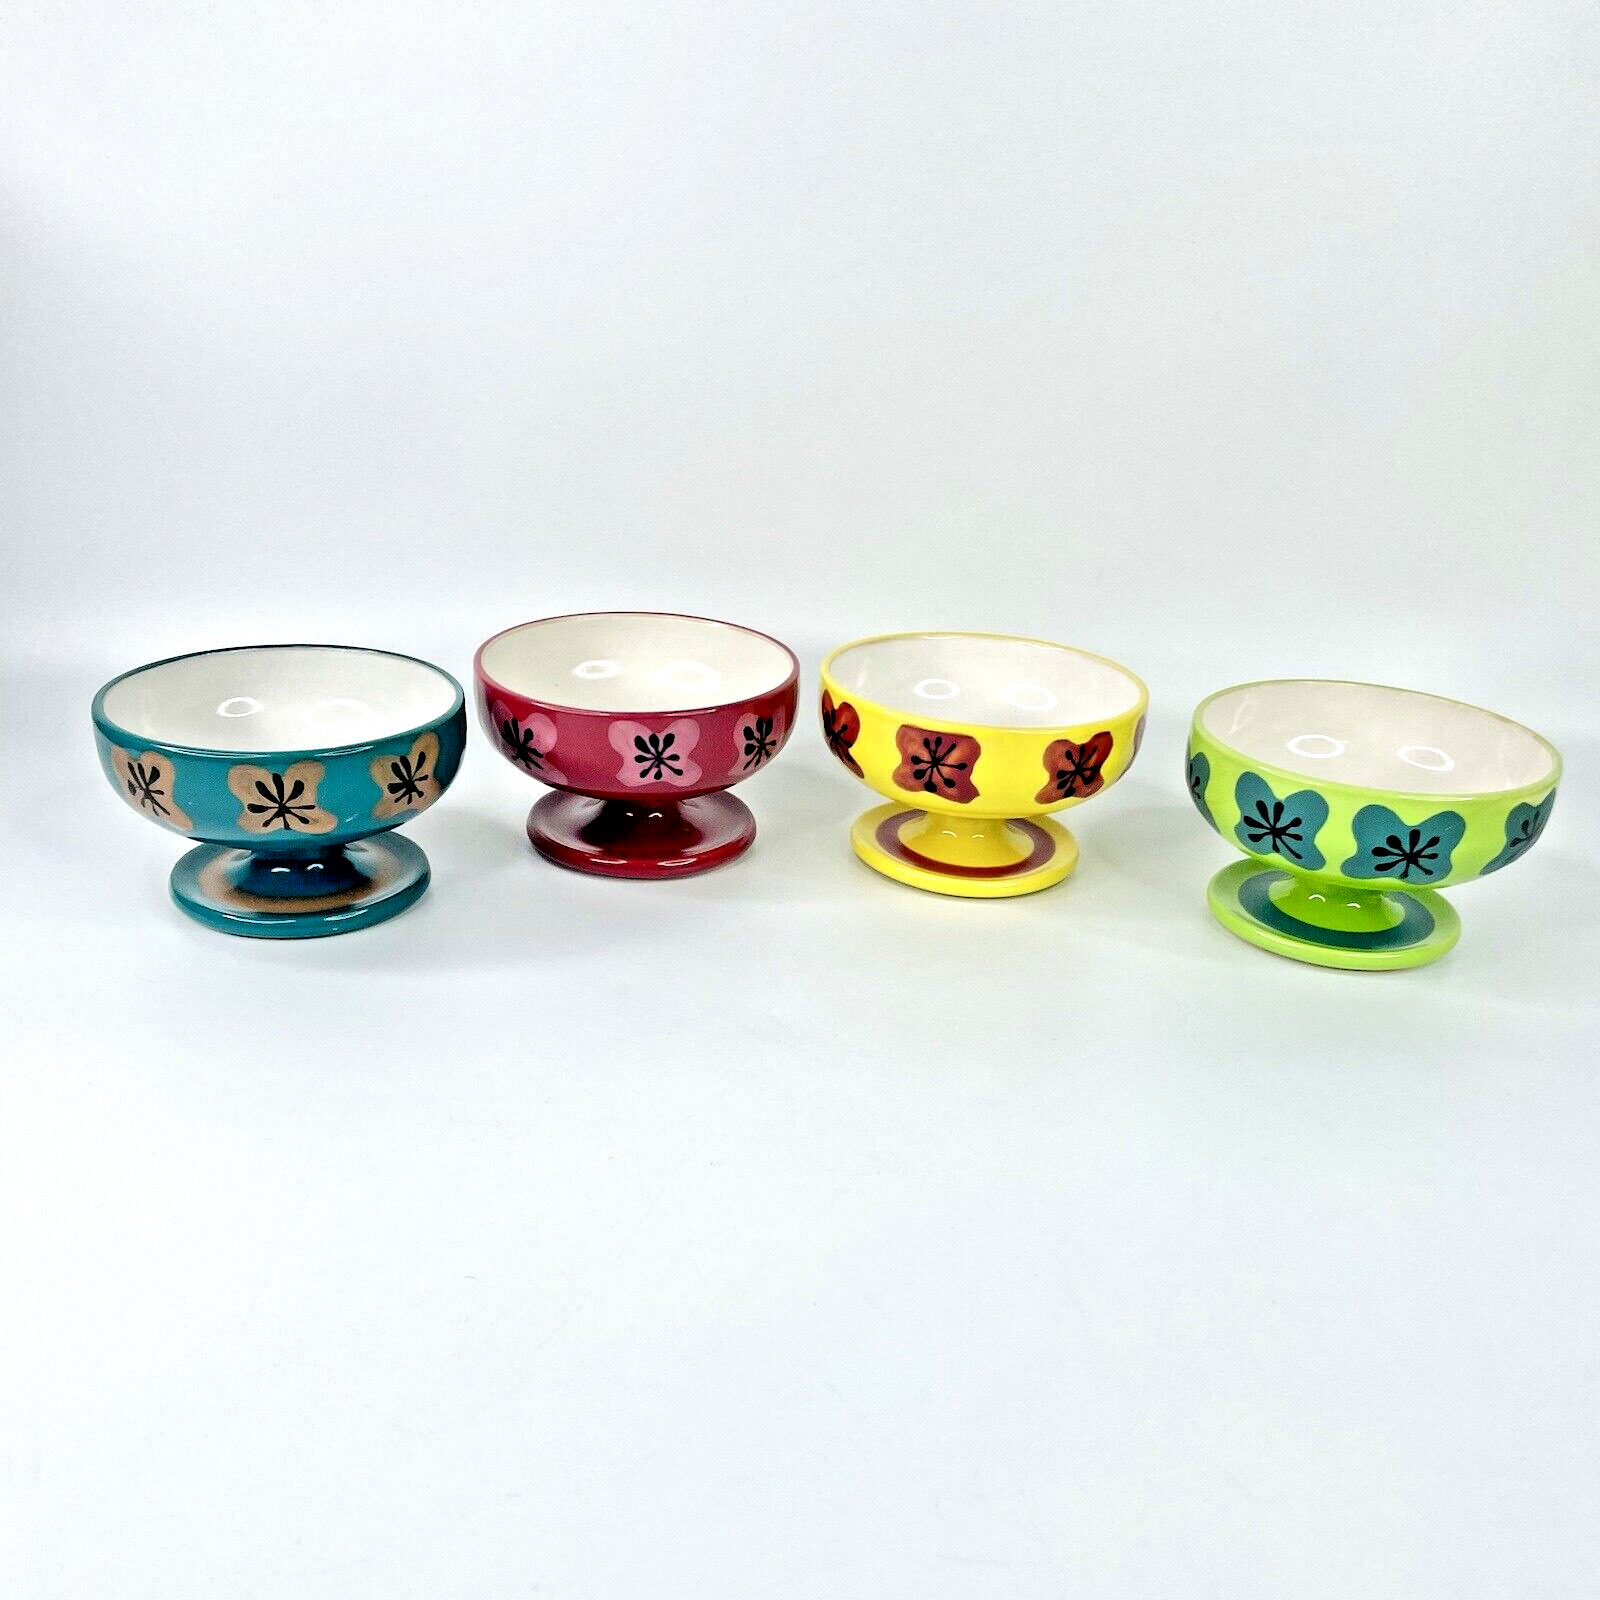 Lot of 4 Vintage Retro Footed Pedestal Dessert Bowls Trinket Dishes Ceramic MCM